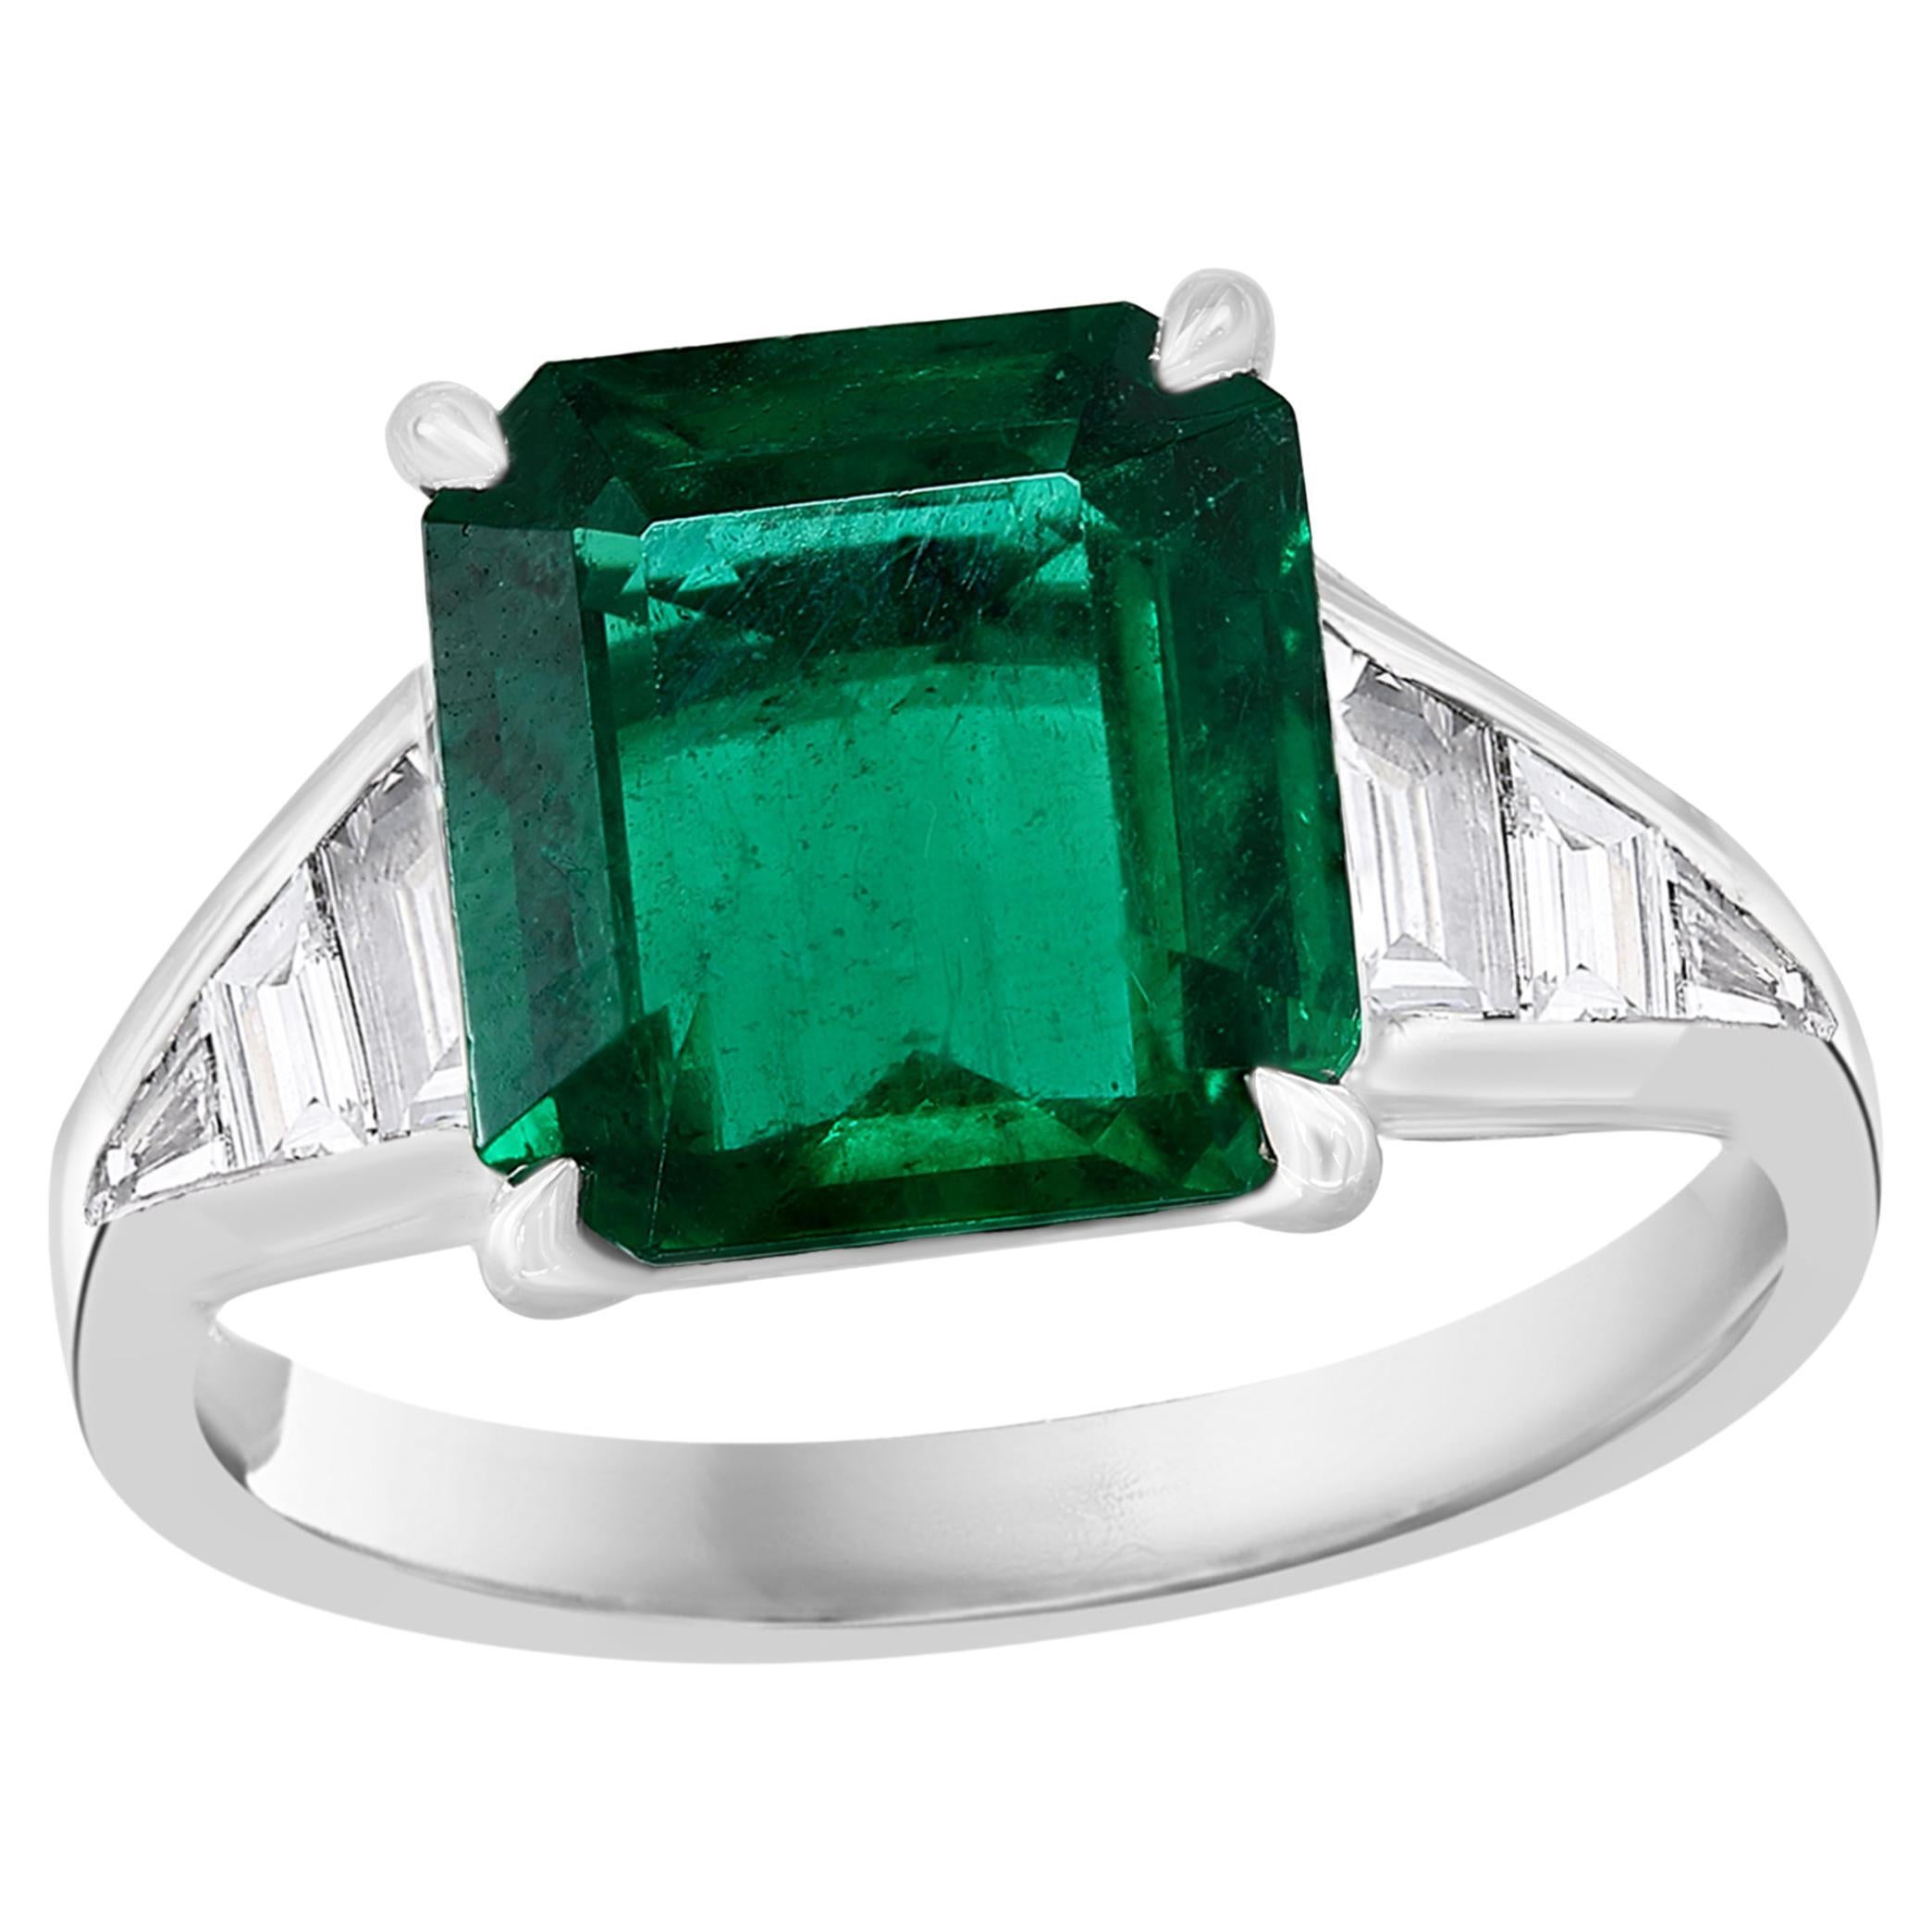 4.03 Carat Emerald Cut Emerald and Diamond Engagement Ring in Platinum